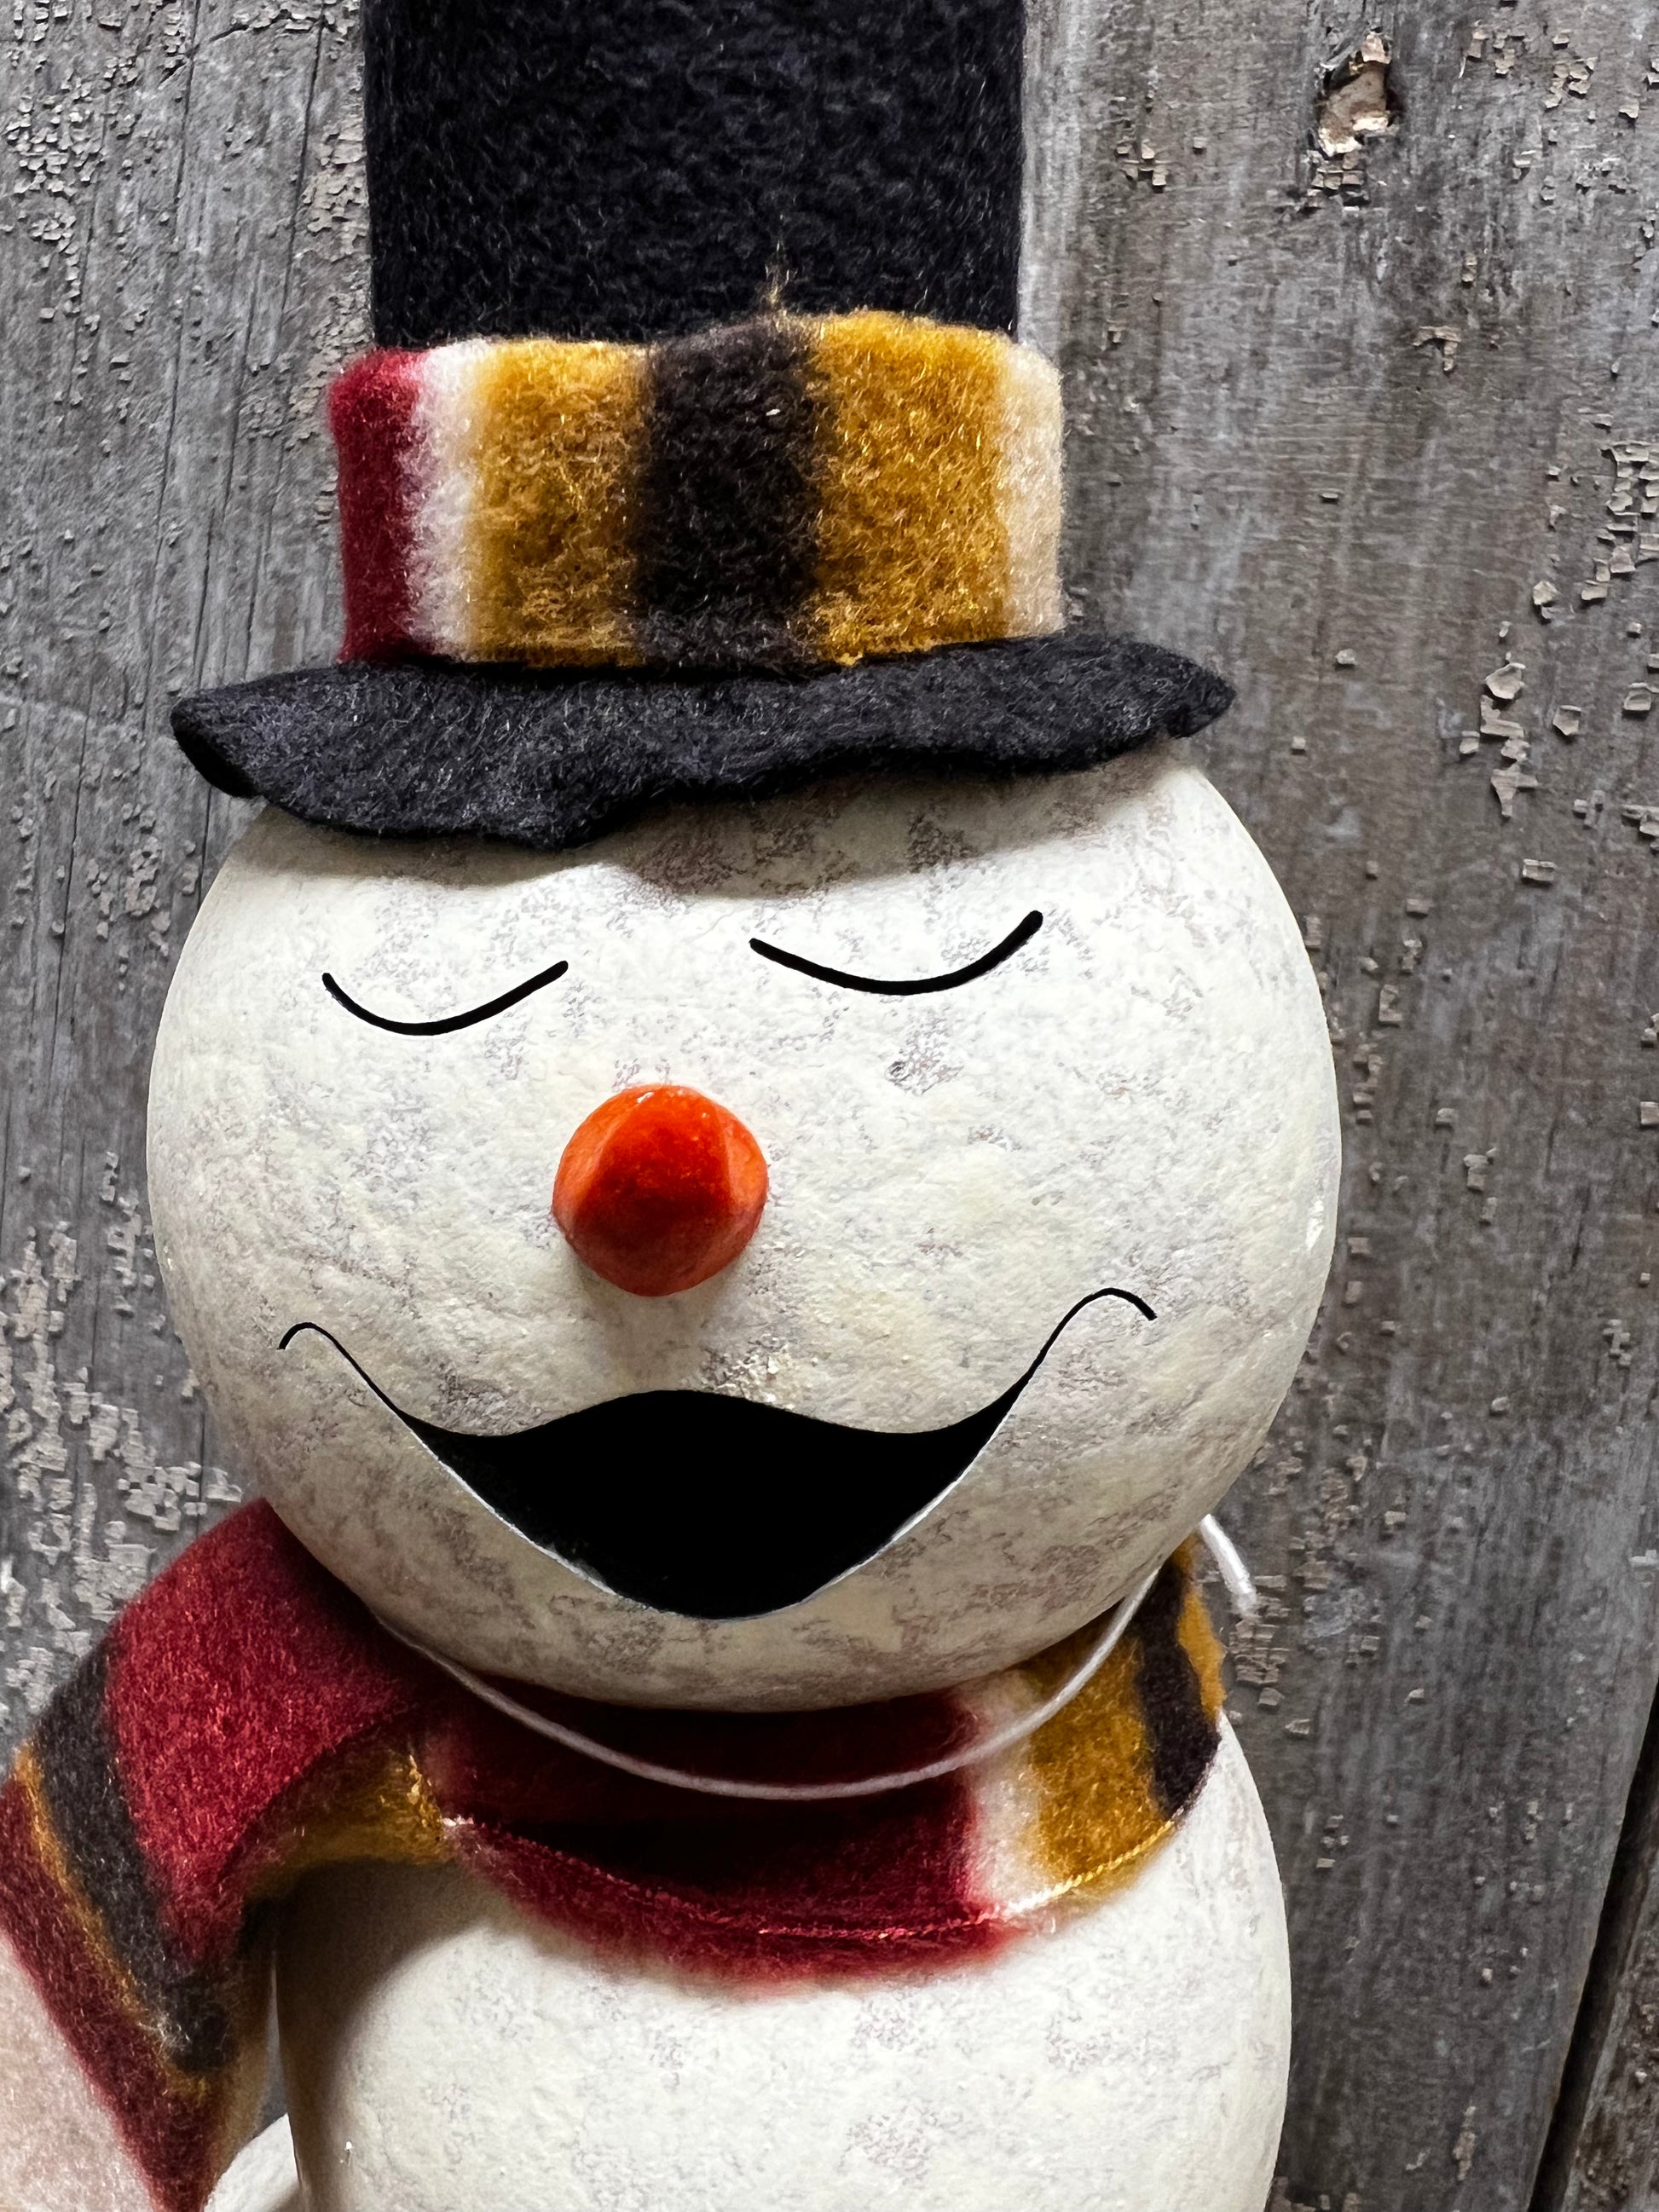 Pinewood - Miniature Snowman